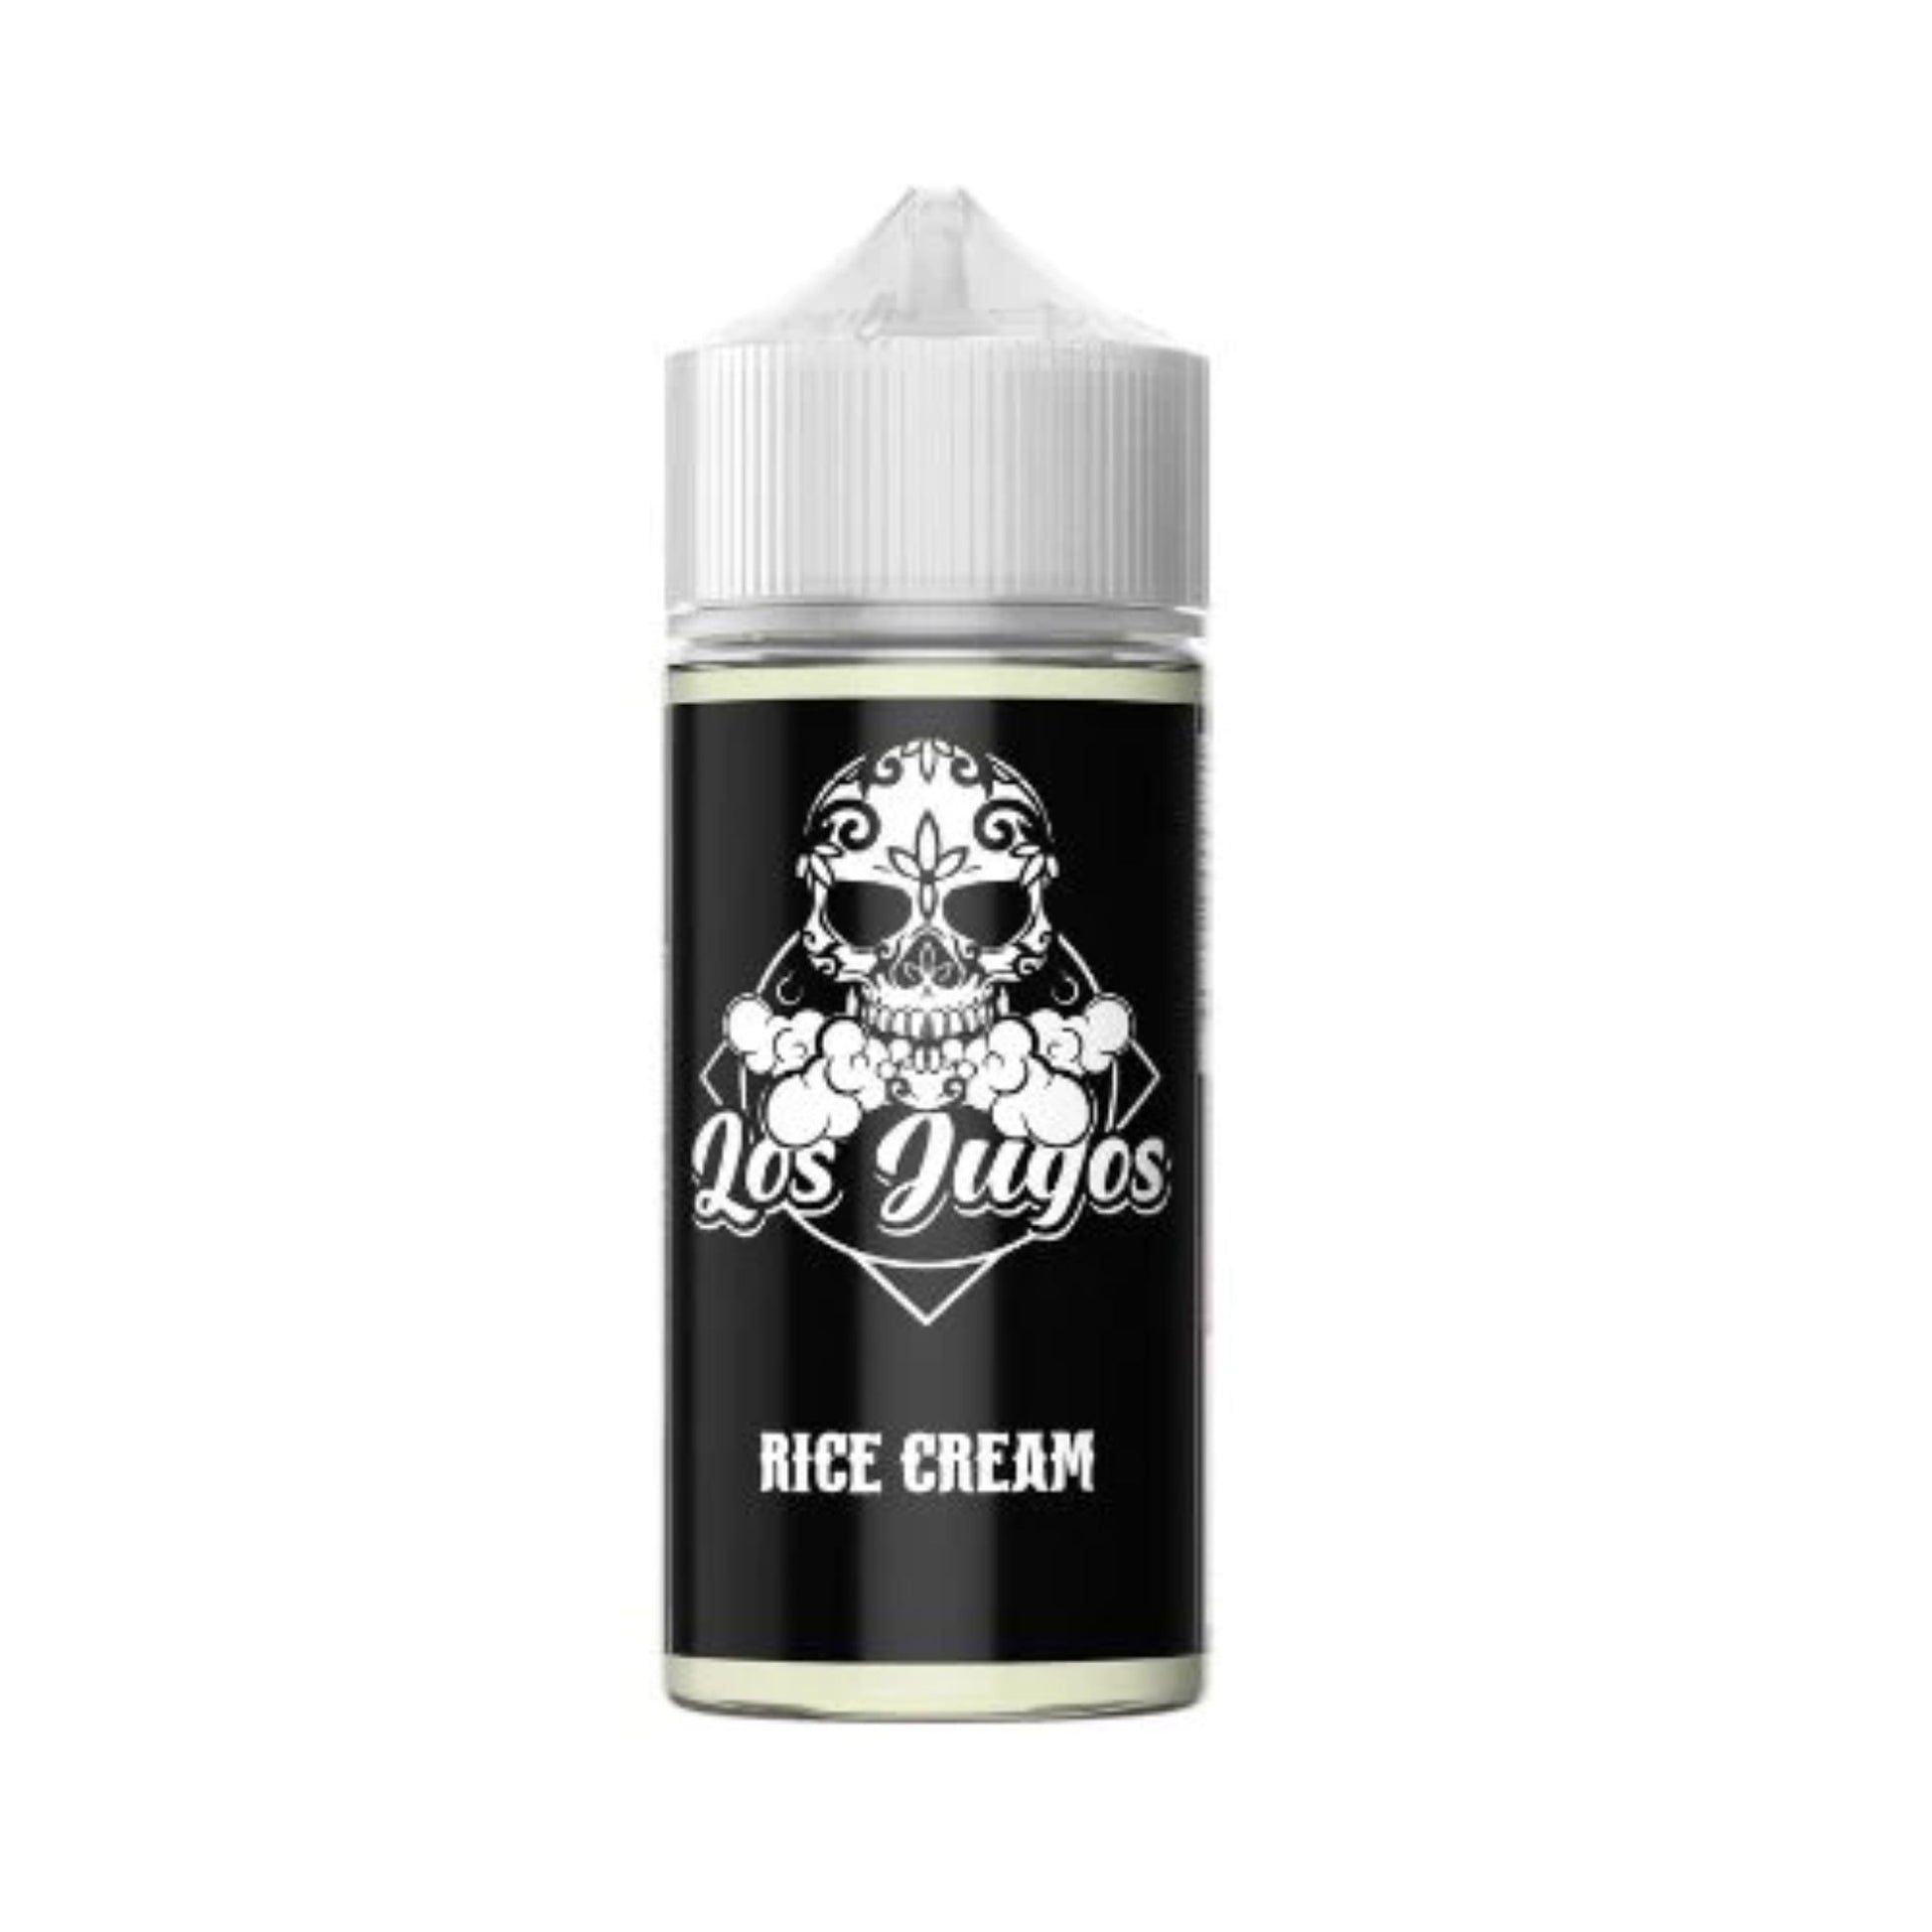 Los Jugos | Rice Cream | 120ml bottle